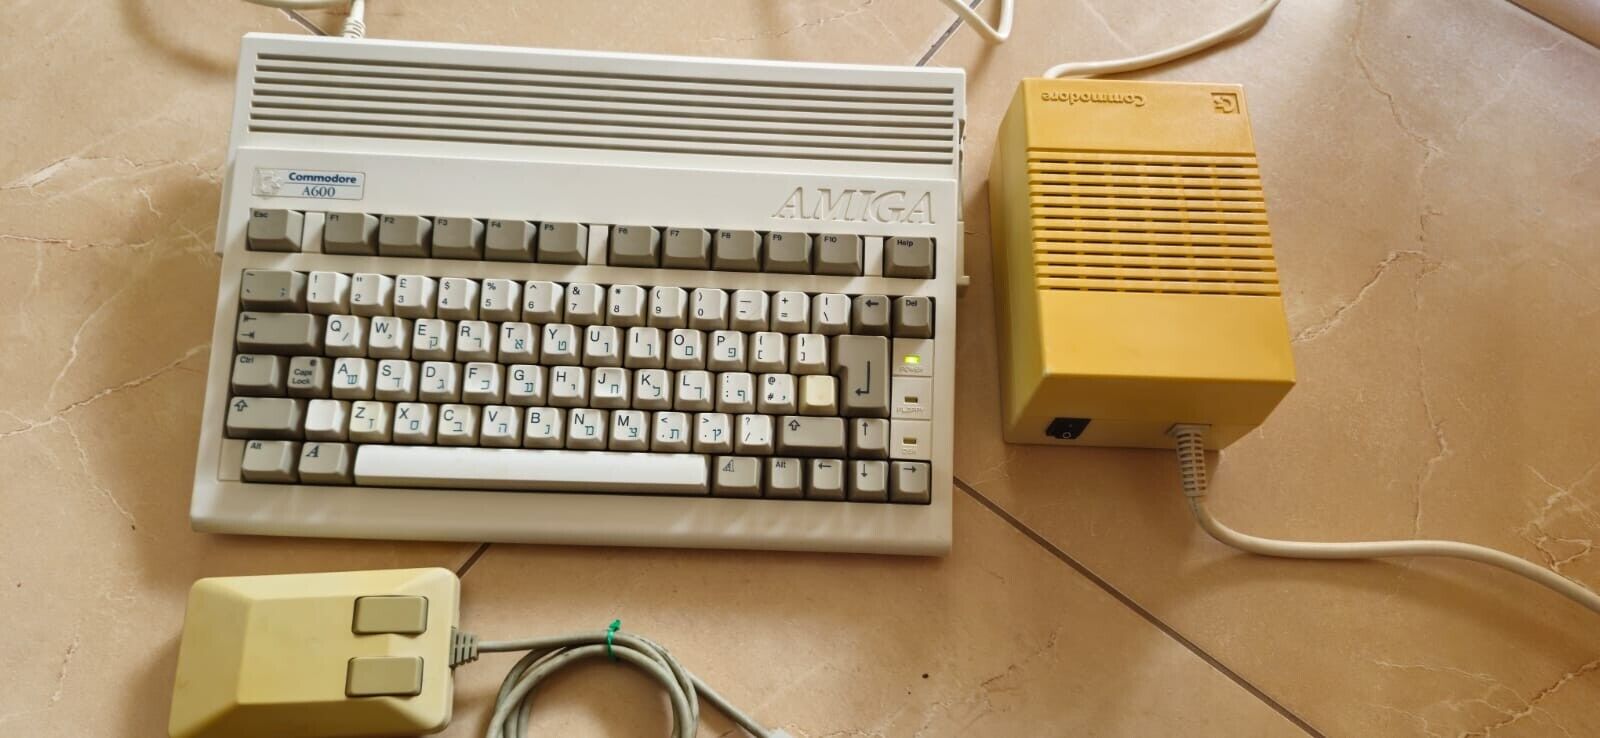 Commodore Amiga A600 Computer w/Original Power Supply w/Original Mouse UPS Ship